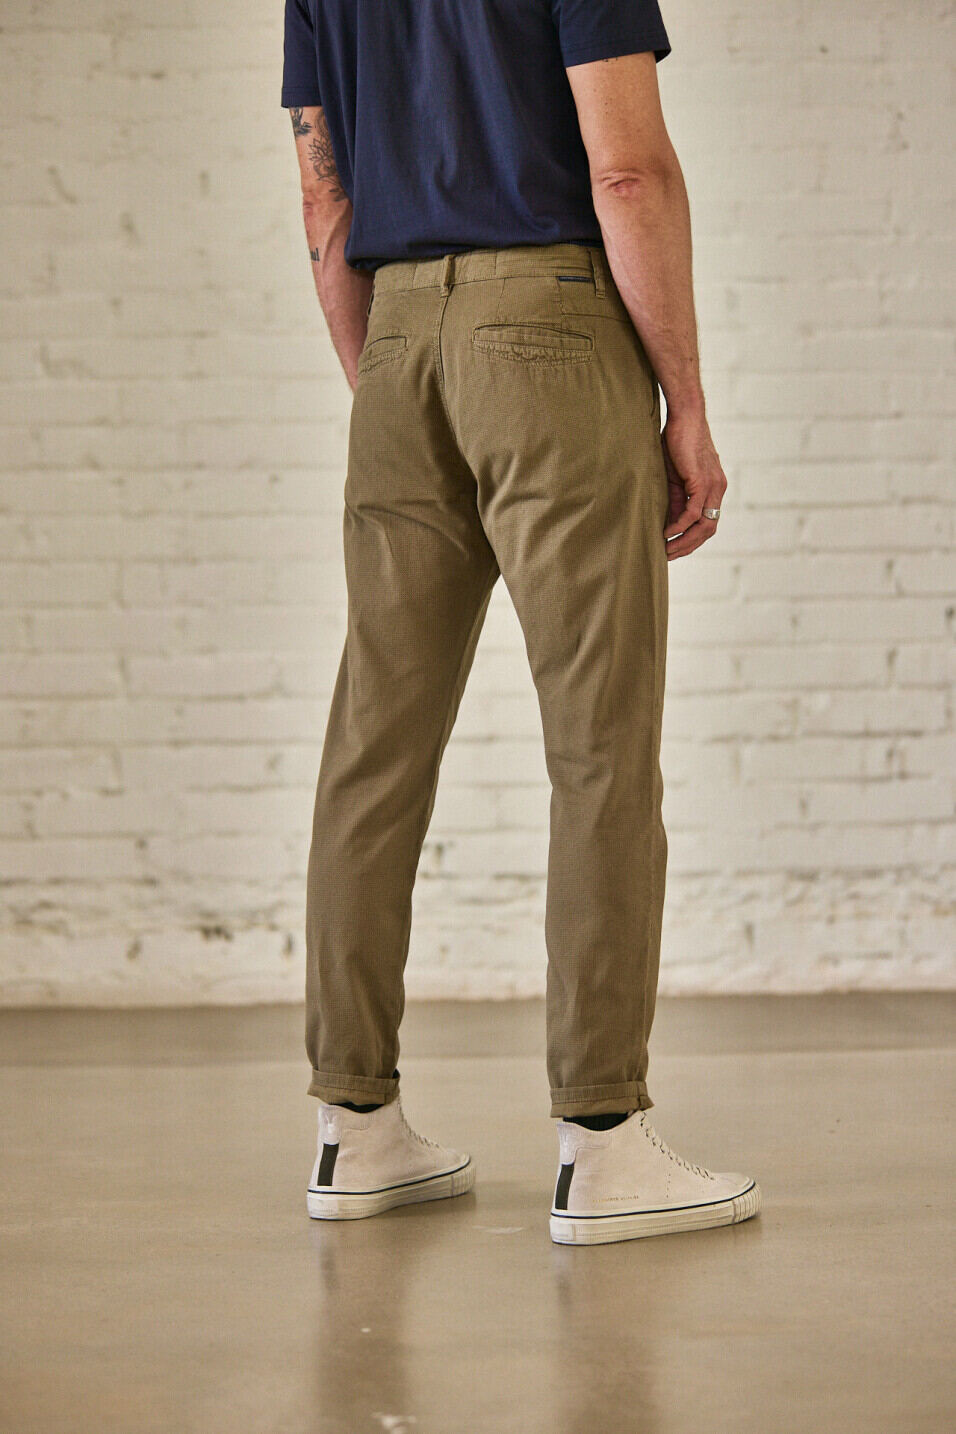 Pantalones chinos Man Bruce Aras Dusky green | Freeman T. Porter